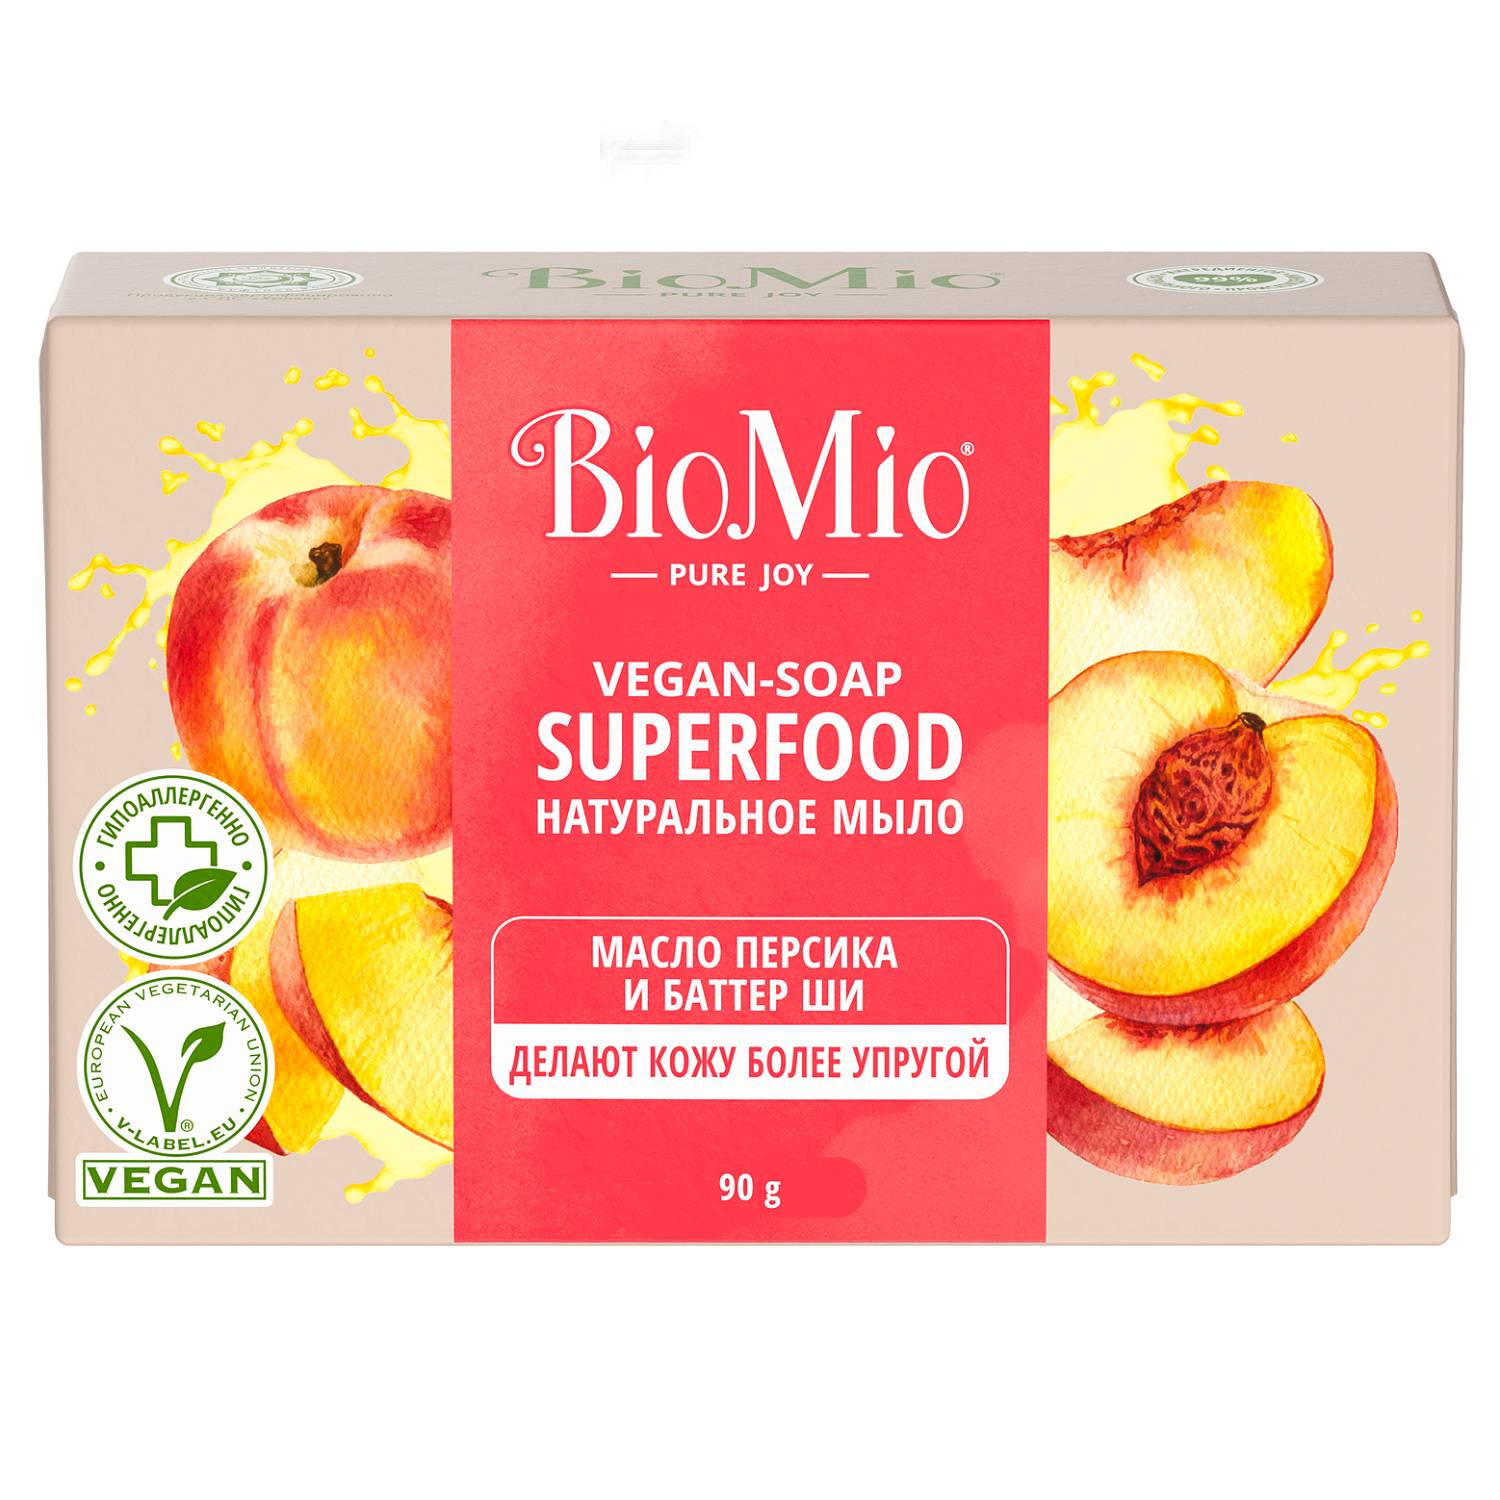 BioMio Натуральное мыло Персик и ши Vegan Soap Superfood, 90 г (BioMio, Мыло) натуральное мыло инжир и кокос vegan soap superfood 90 г